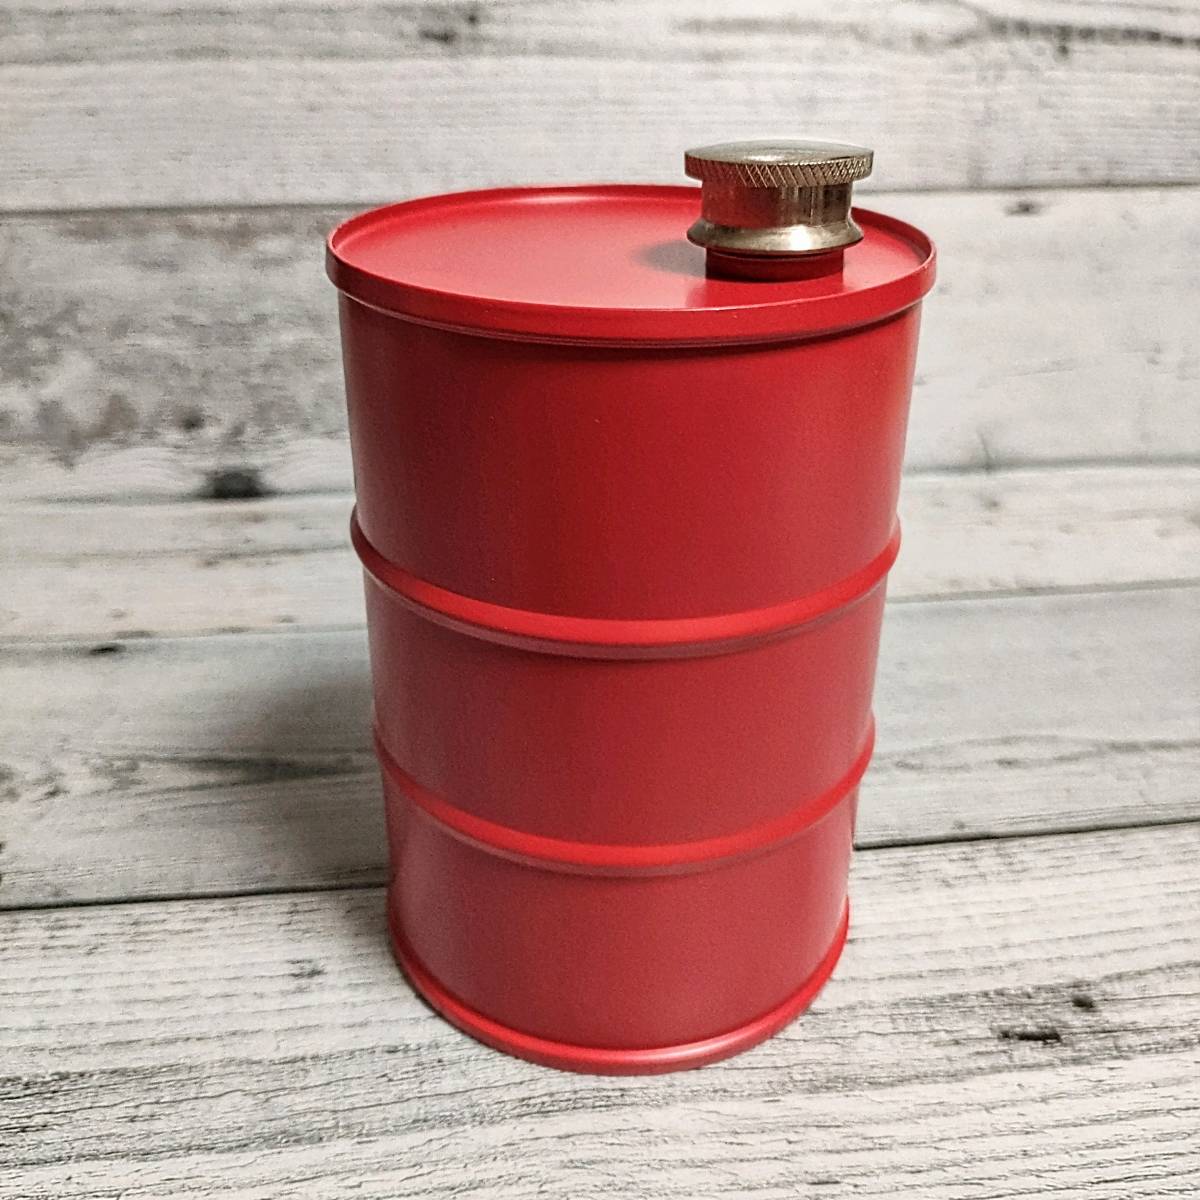 赤 ドラム缶型 オイル缶 スキットル ガソリン携行缶 ステンレス SUS304 アウトドア アルコール_画像2